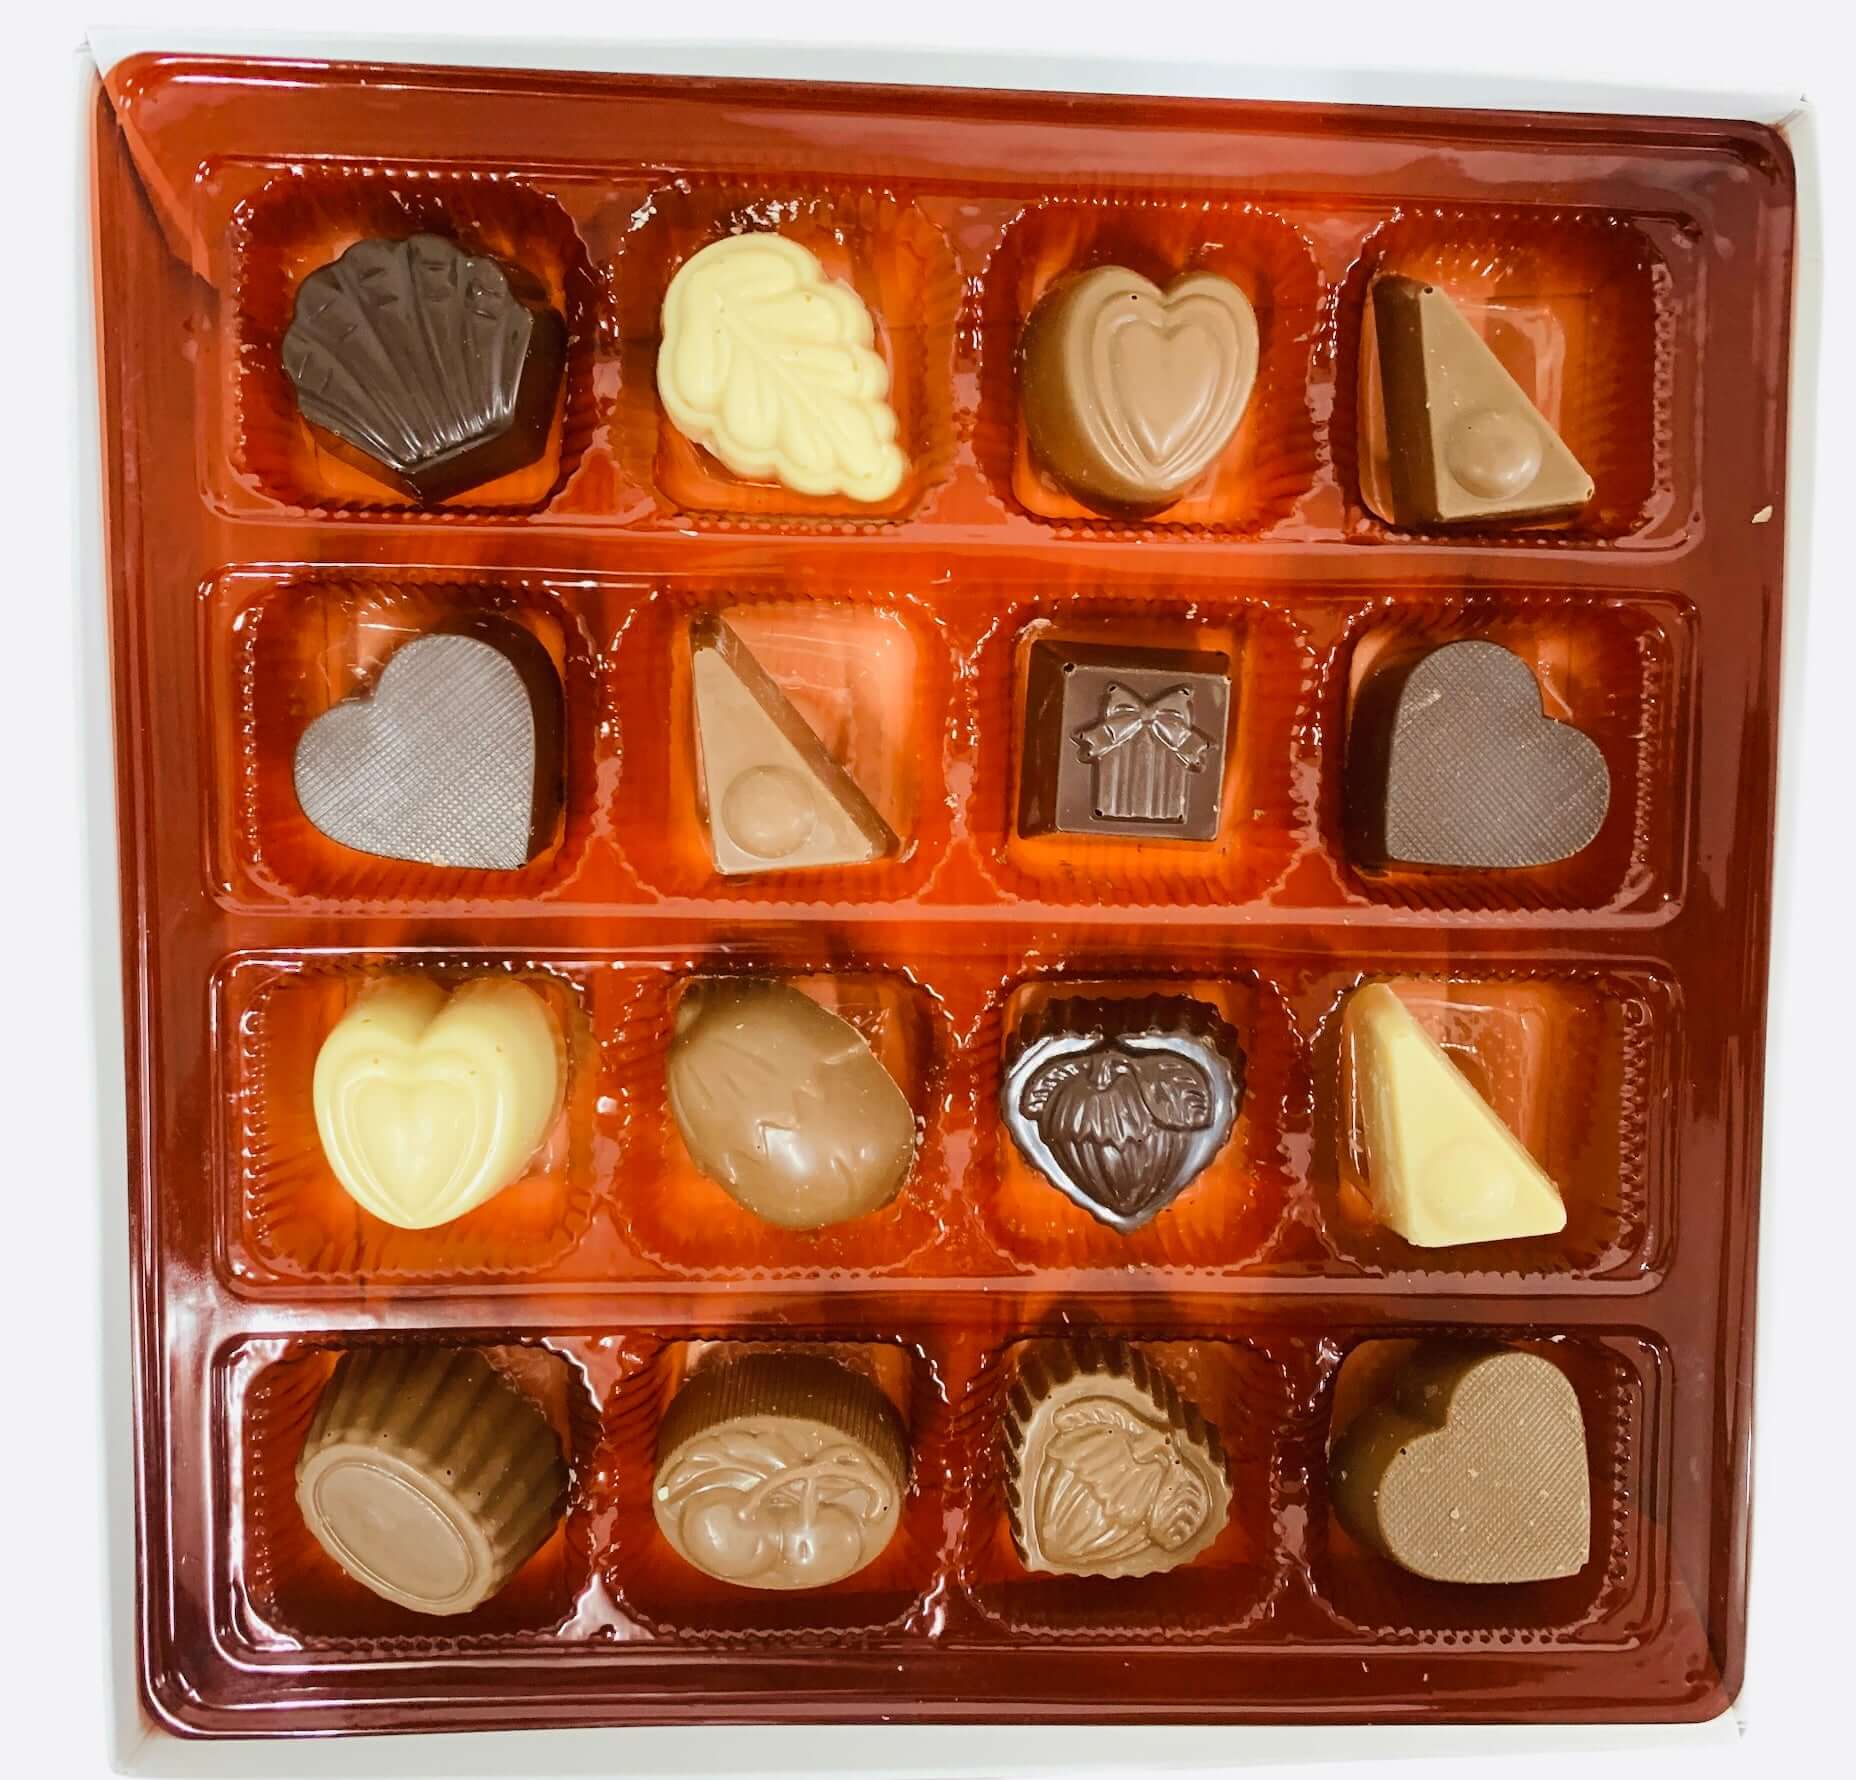 Boîte de chocolat assortis l Chocolat en ligne l Cadeau